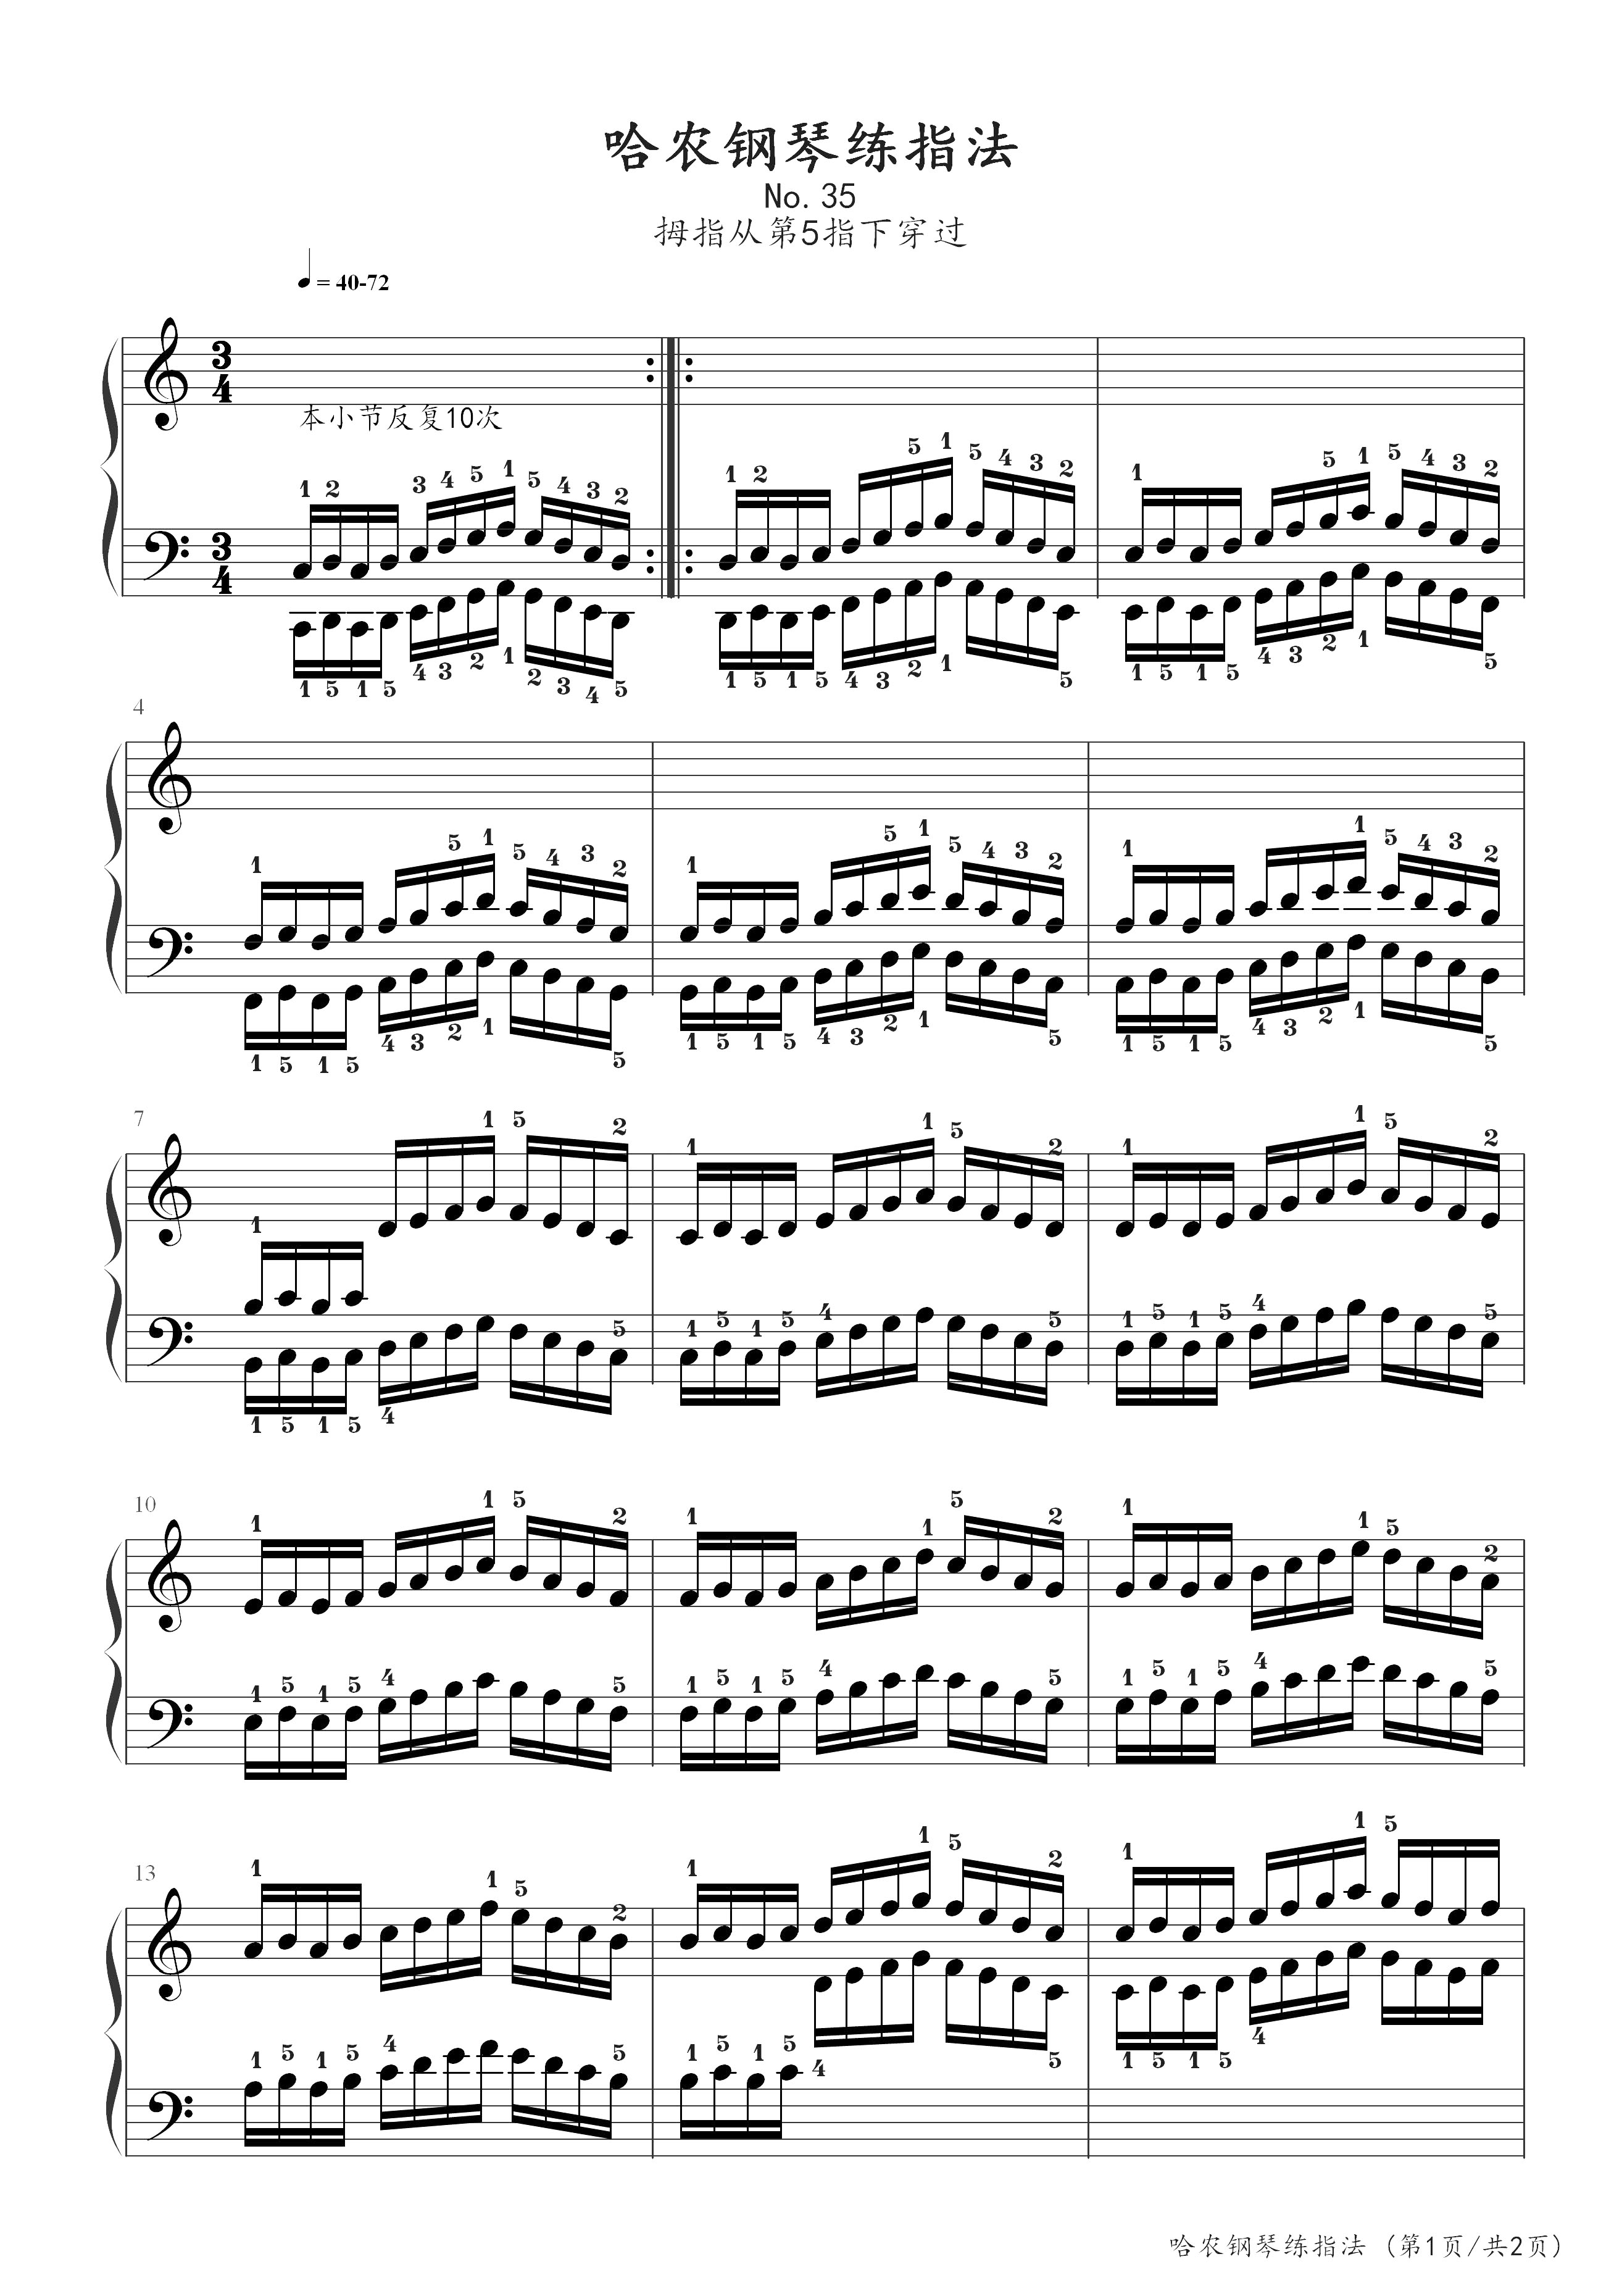 哈农钢琴练指法39e和声小调音阶钢琴谱哈农c调古典钢琴五线谱